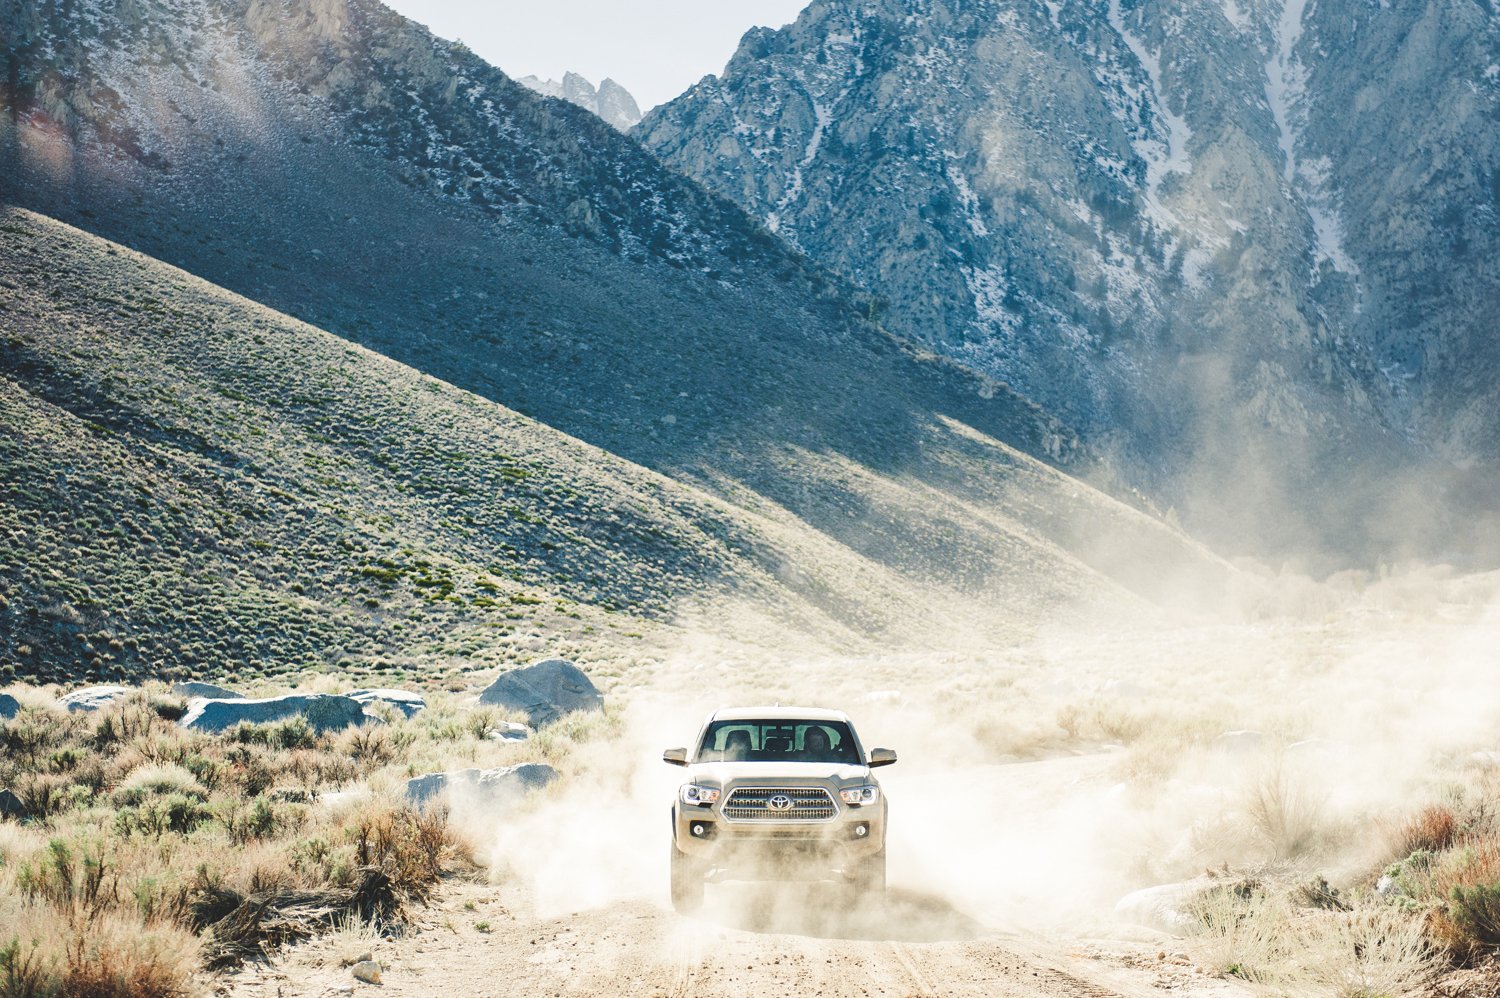 Toyota 4Runner driving on a dirt road, photo by Mark Skovorodko.